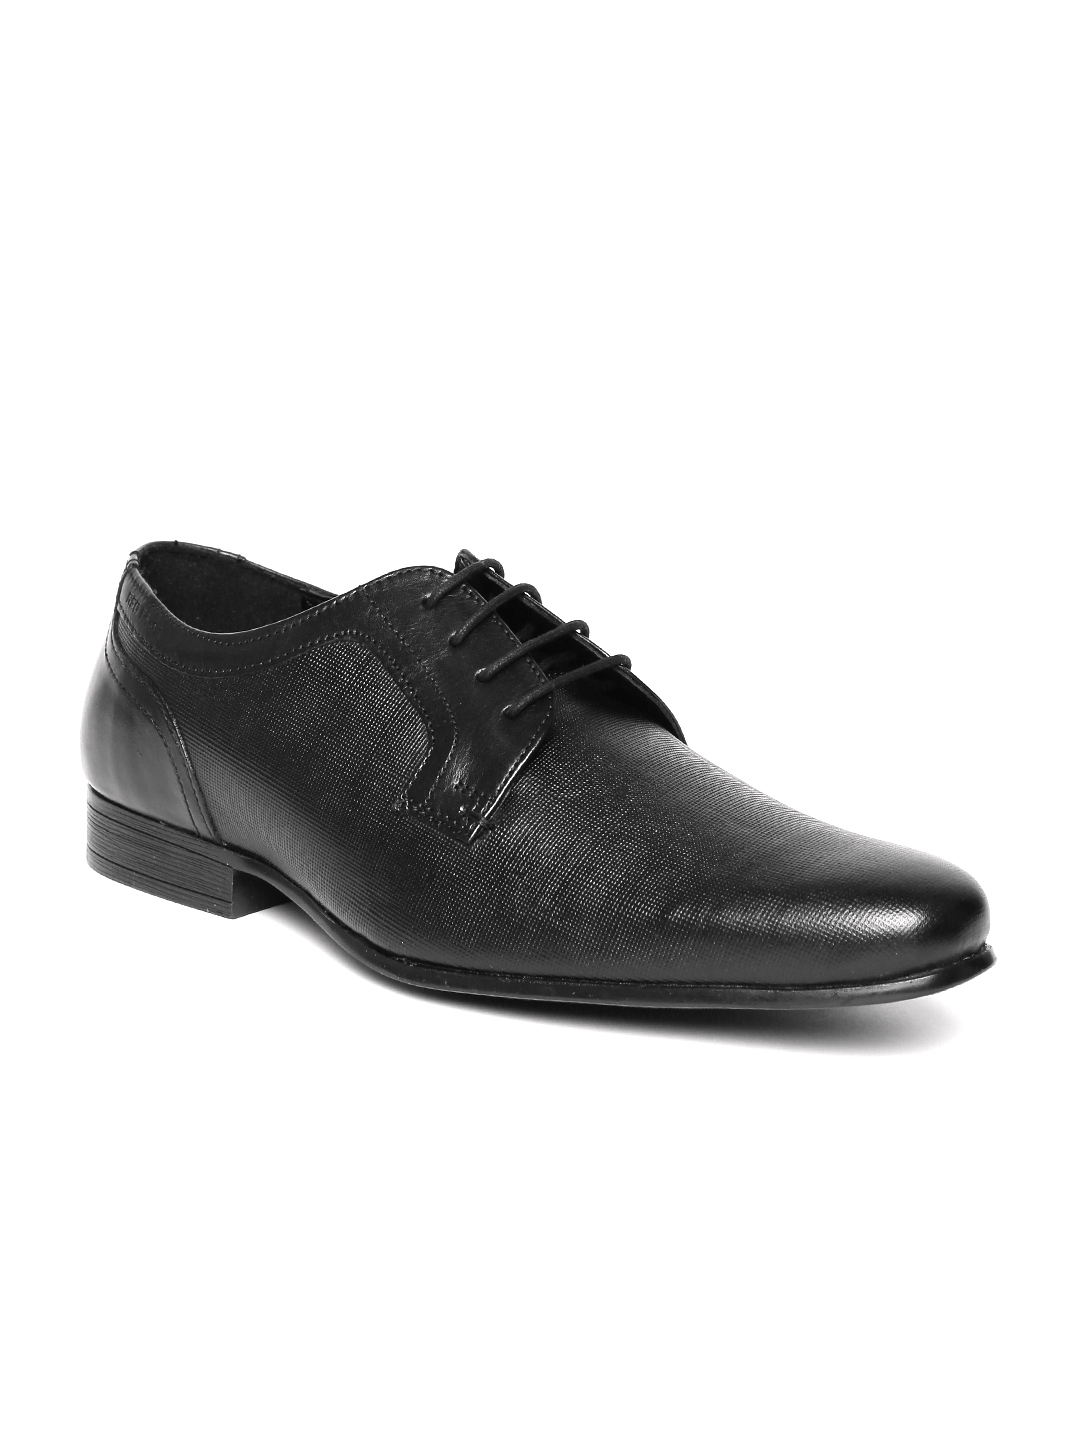 Buy Red Tape Men Black Leather Textured Derbys - Formal Shoes for Men ...